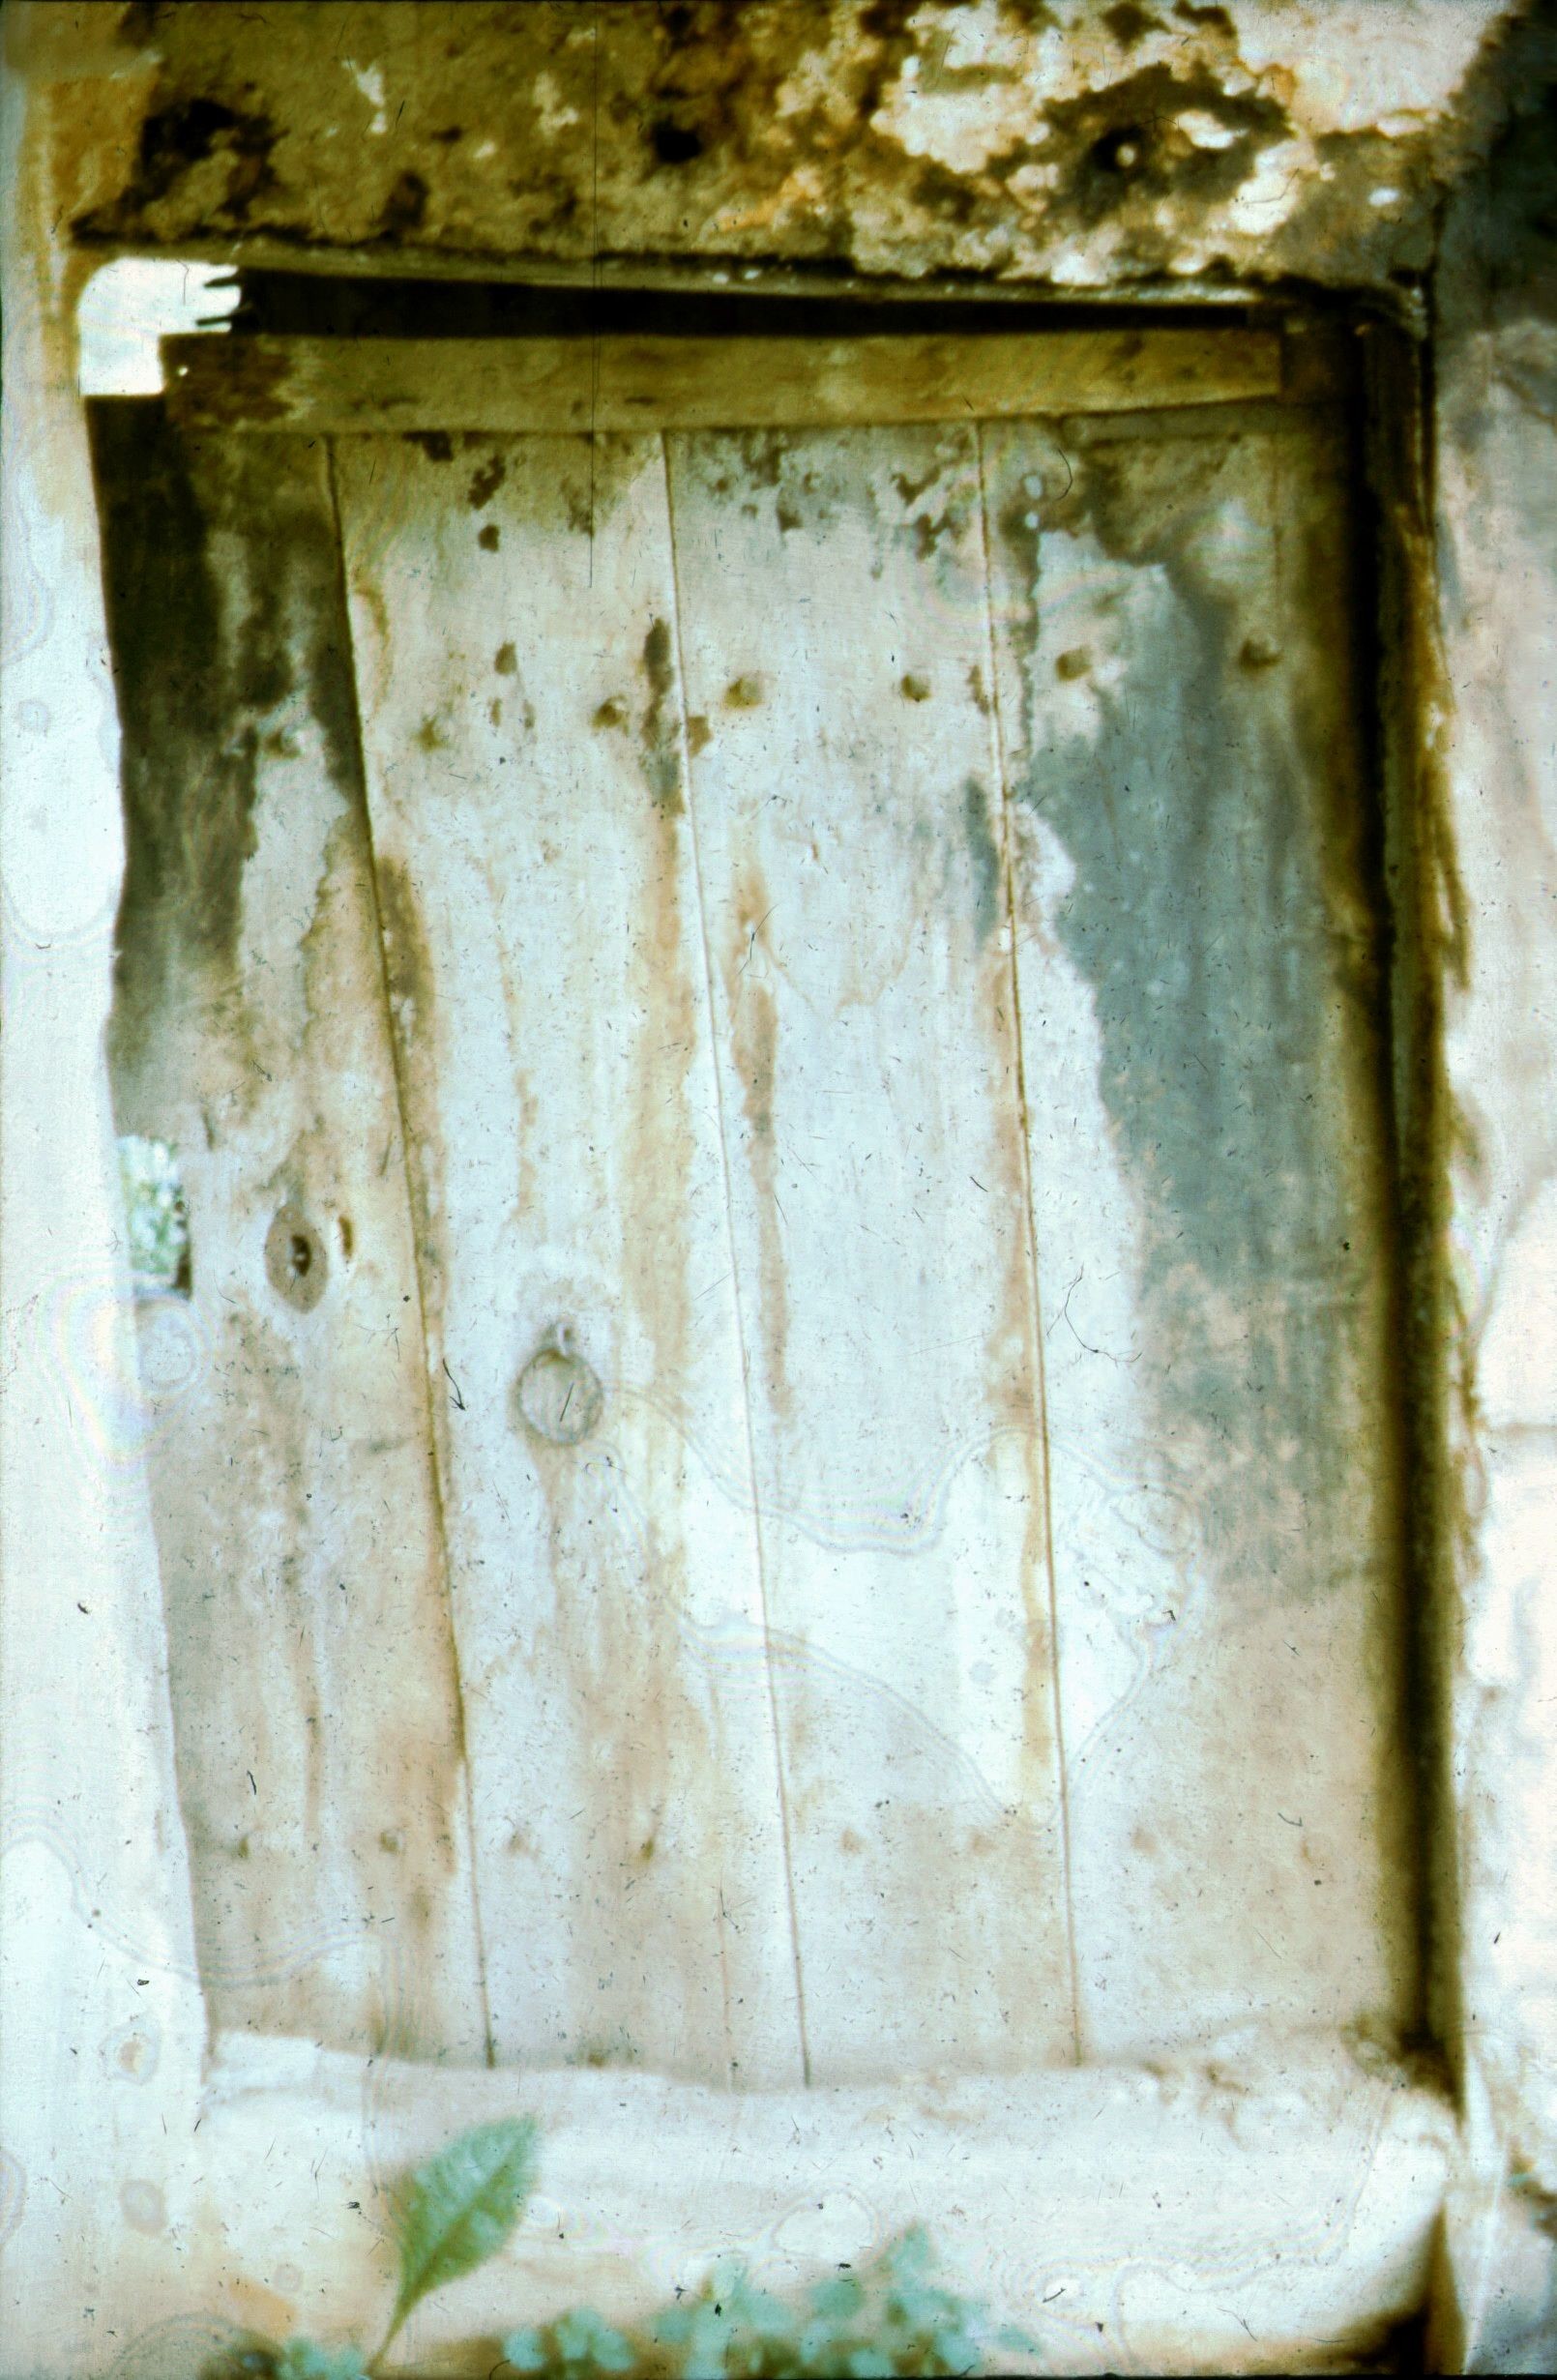 Kamoraajtó a pitar felől. Pátró (Rippl-Rónai Múzeum CC BY-NC-ND)